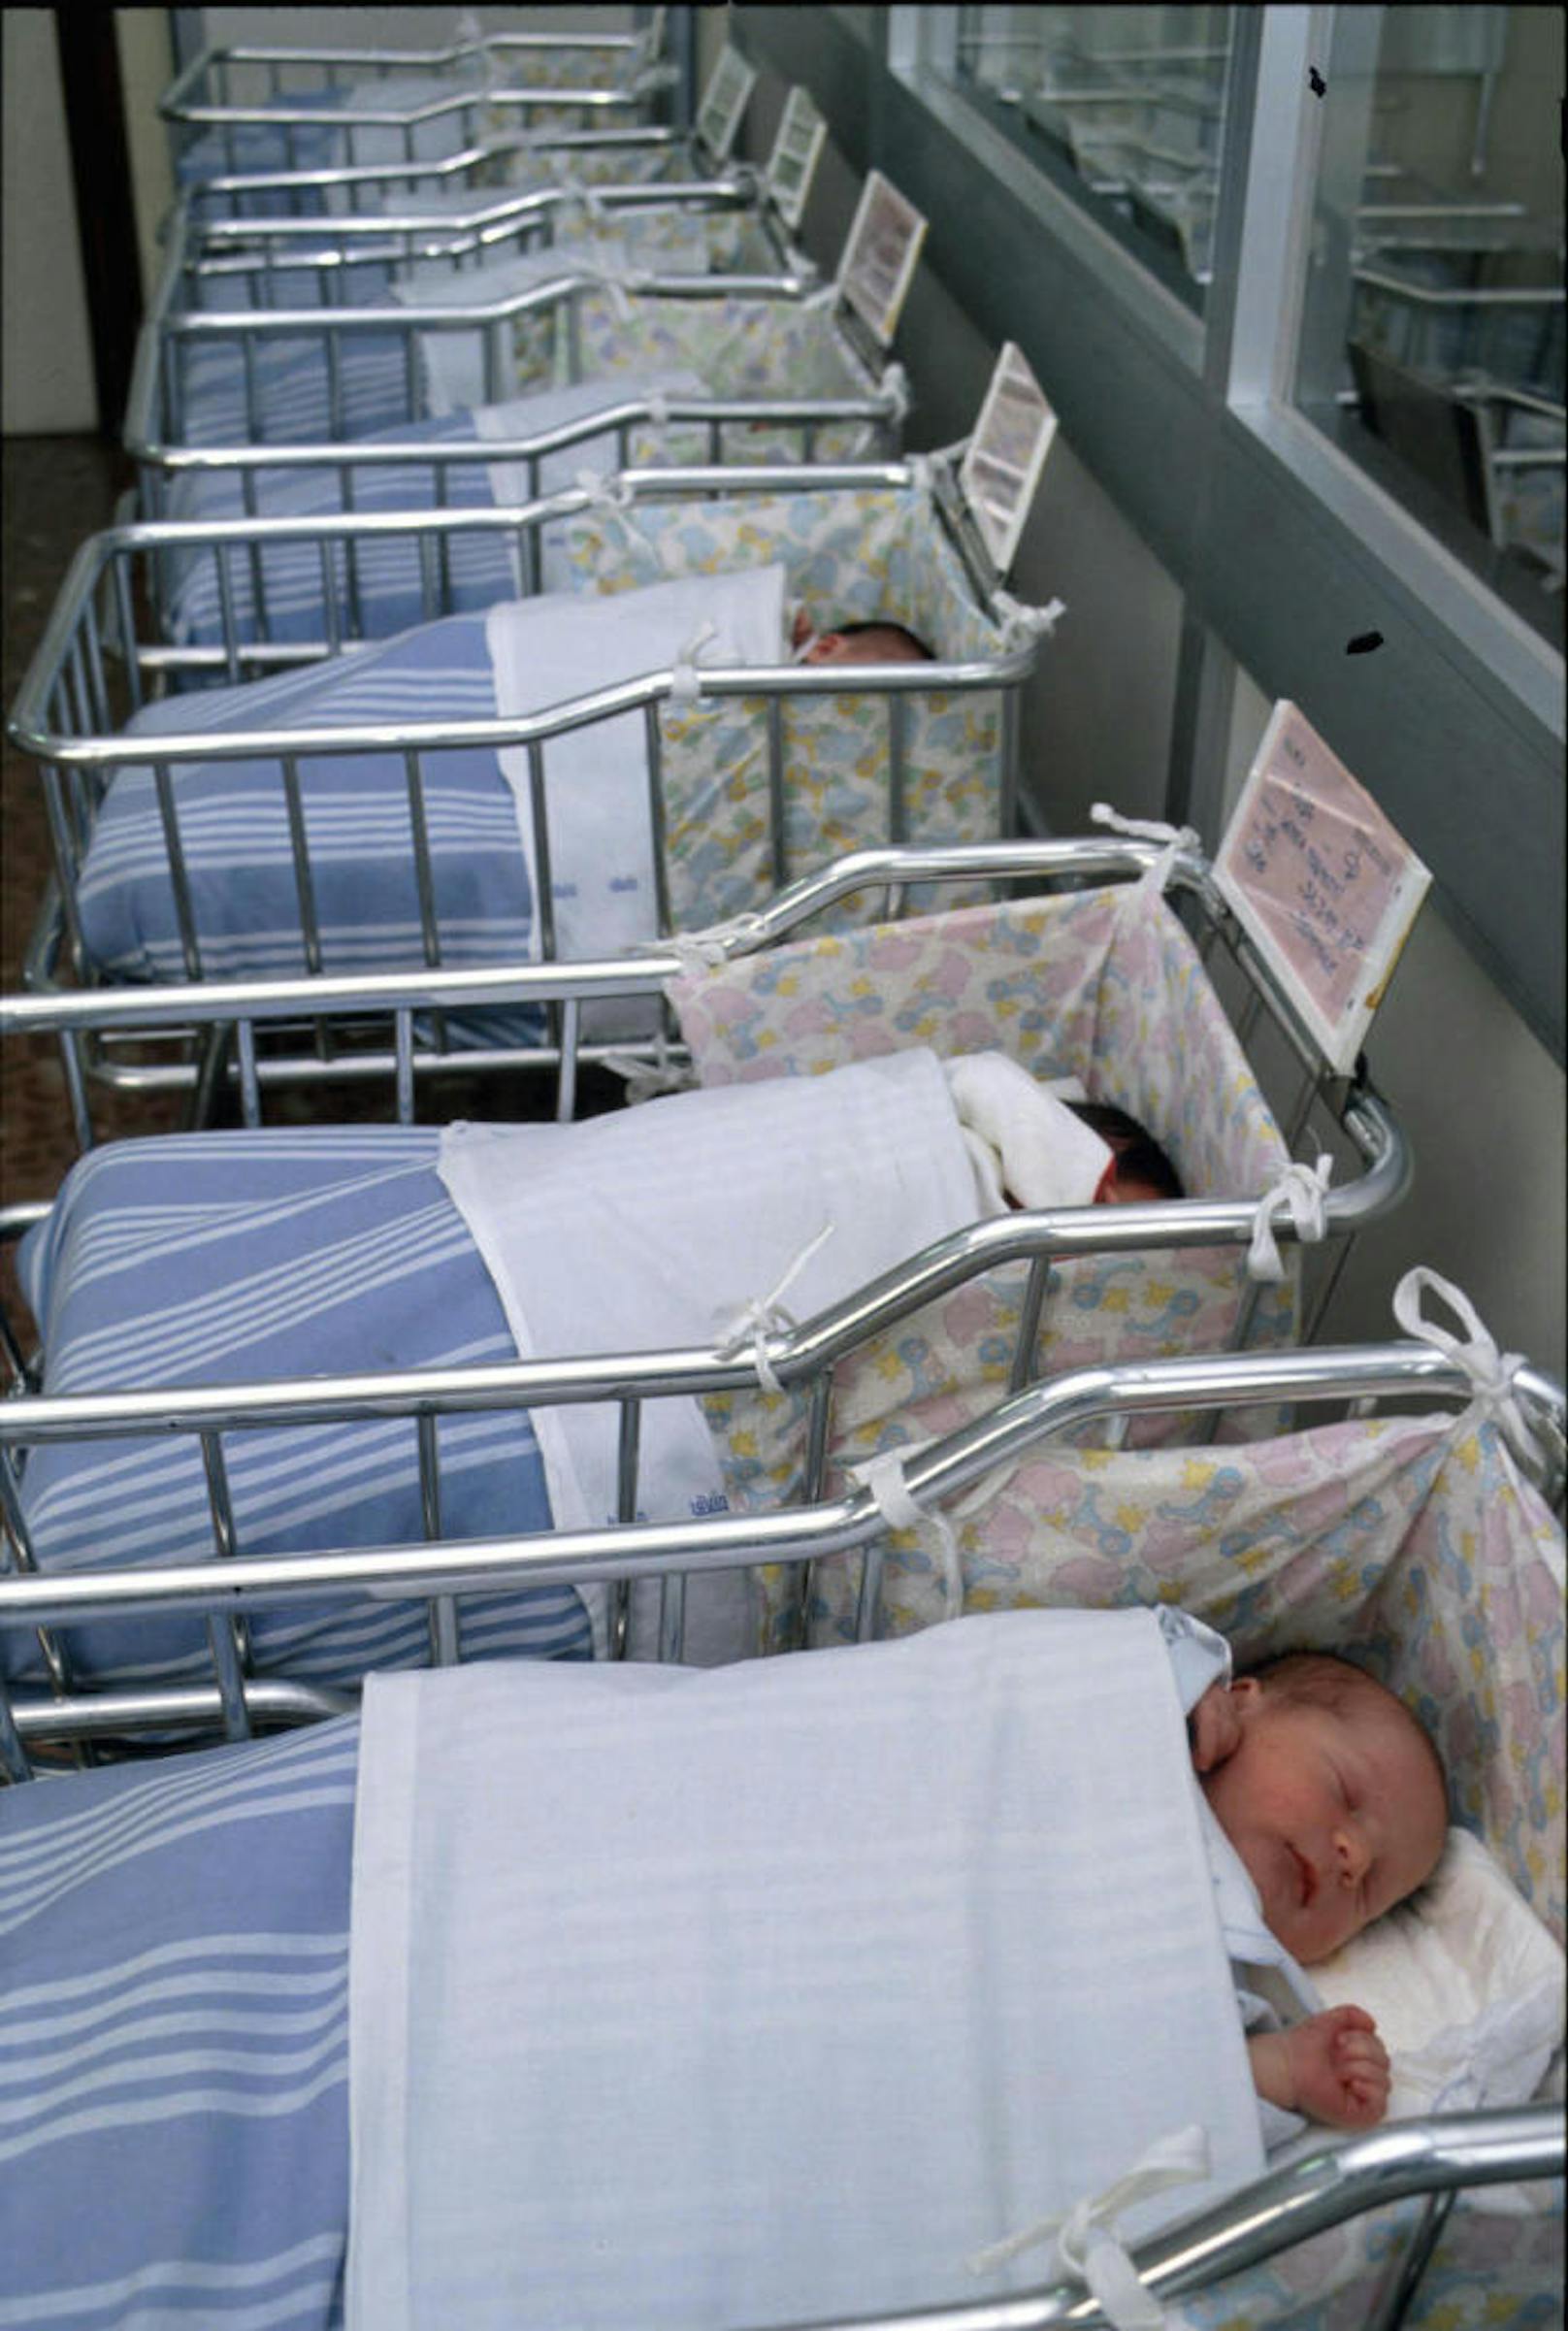 (Symbolbild) Innerhalb weniger Wochen wurden in einer Klinik im deutschen Gelsenkirchen drei Babys mit fehlenden Händen geboren. Kliniken und Hebammen sind alarmiert.